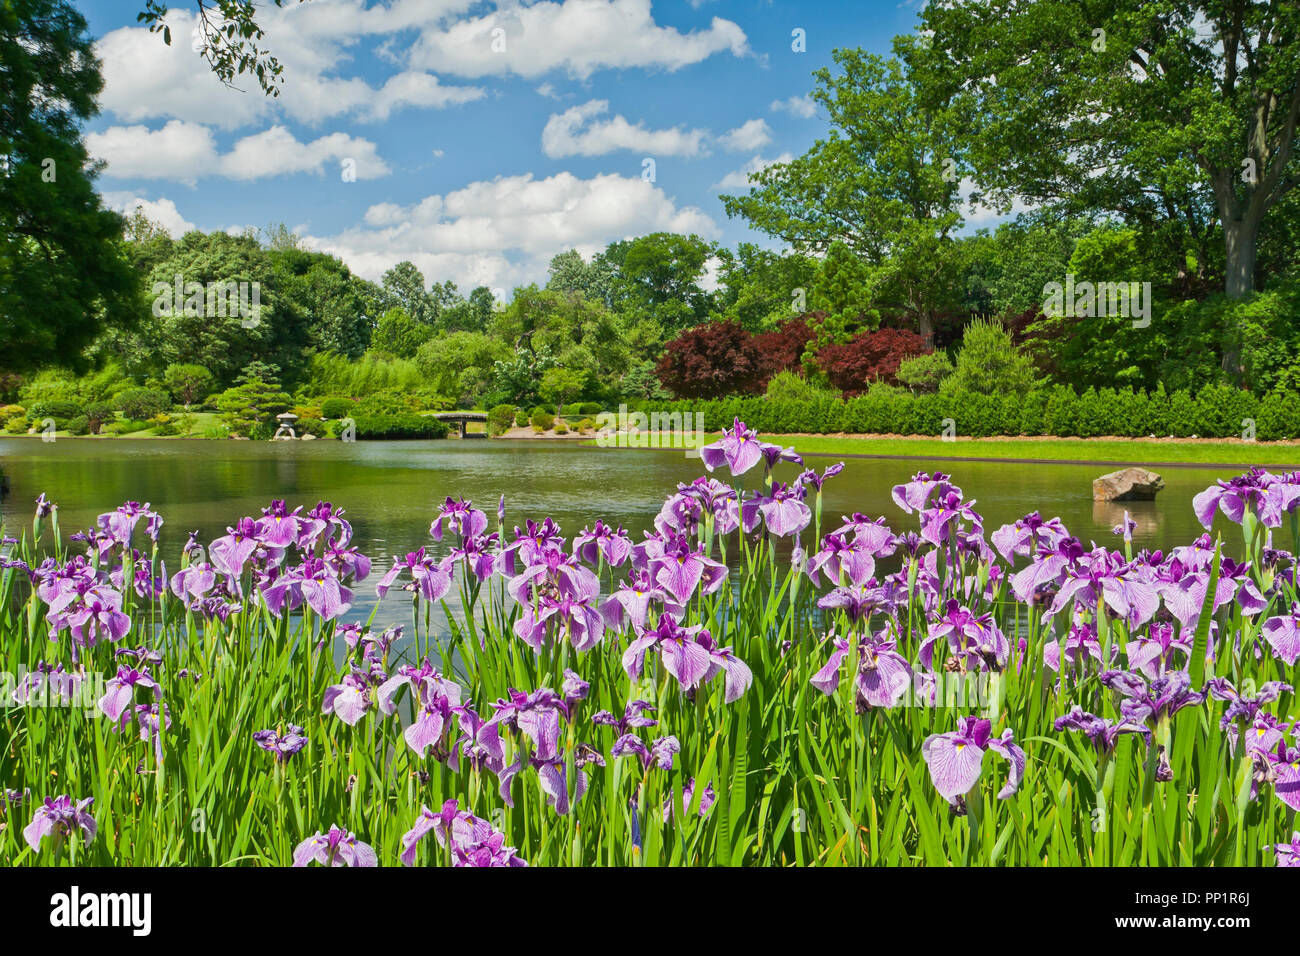 ST. LOUIS - 12 giugno: Bright puffy nuvole nel cielo blu su iridi rosa accanto al lago nel giardino giapponese in corrispondenza del giardino botanico del Missouri a metà Foto Stock